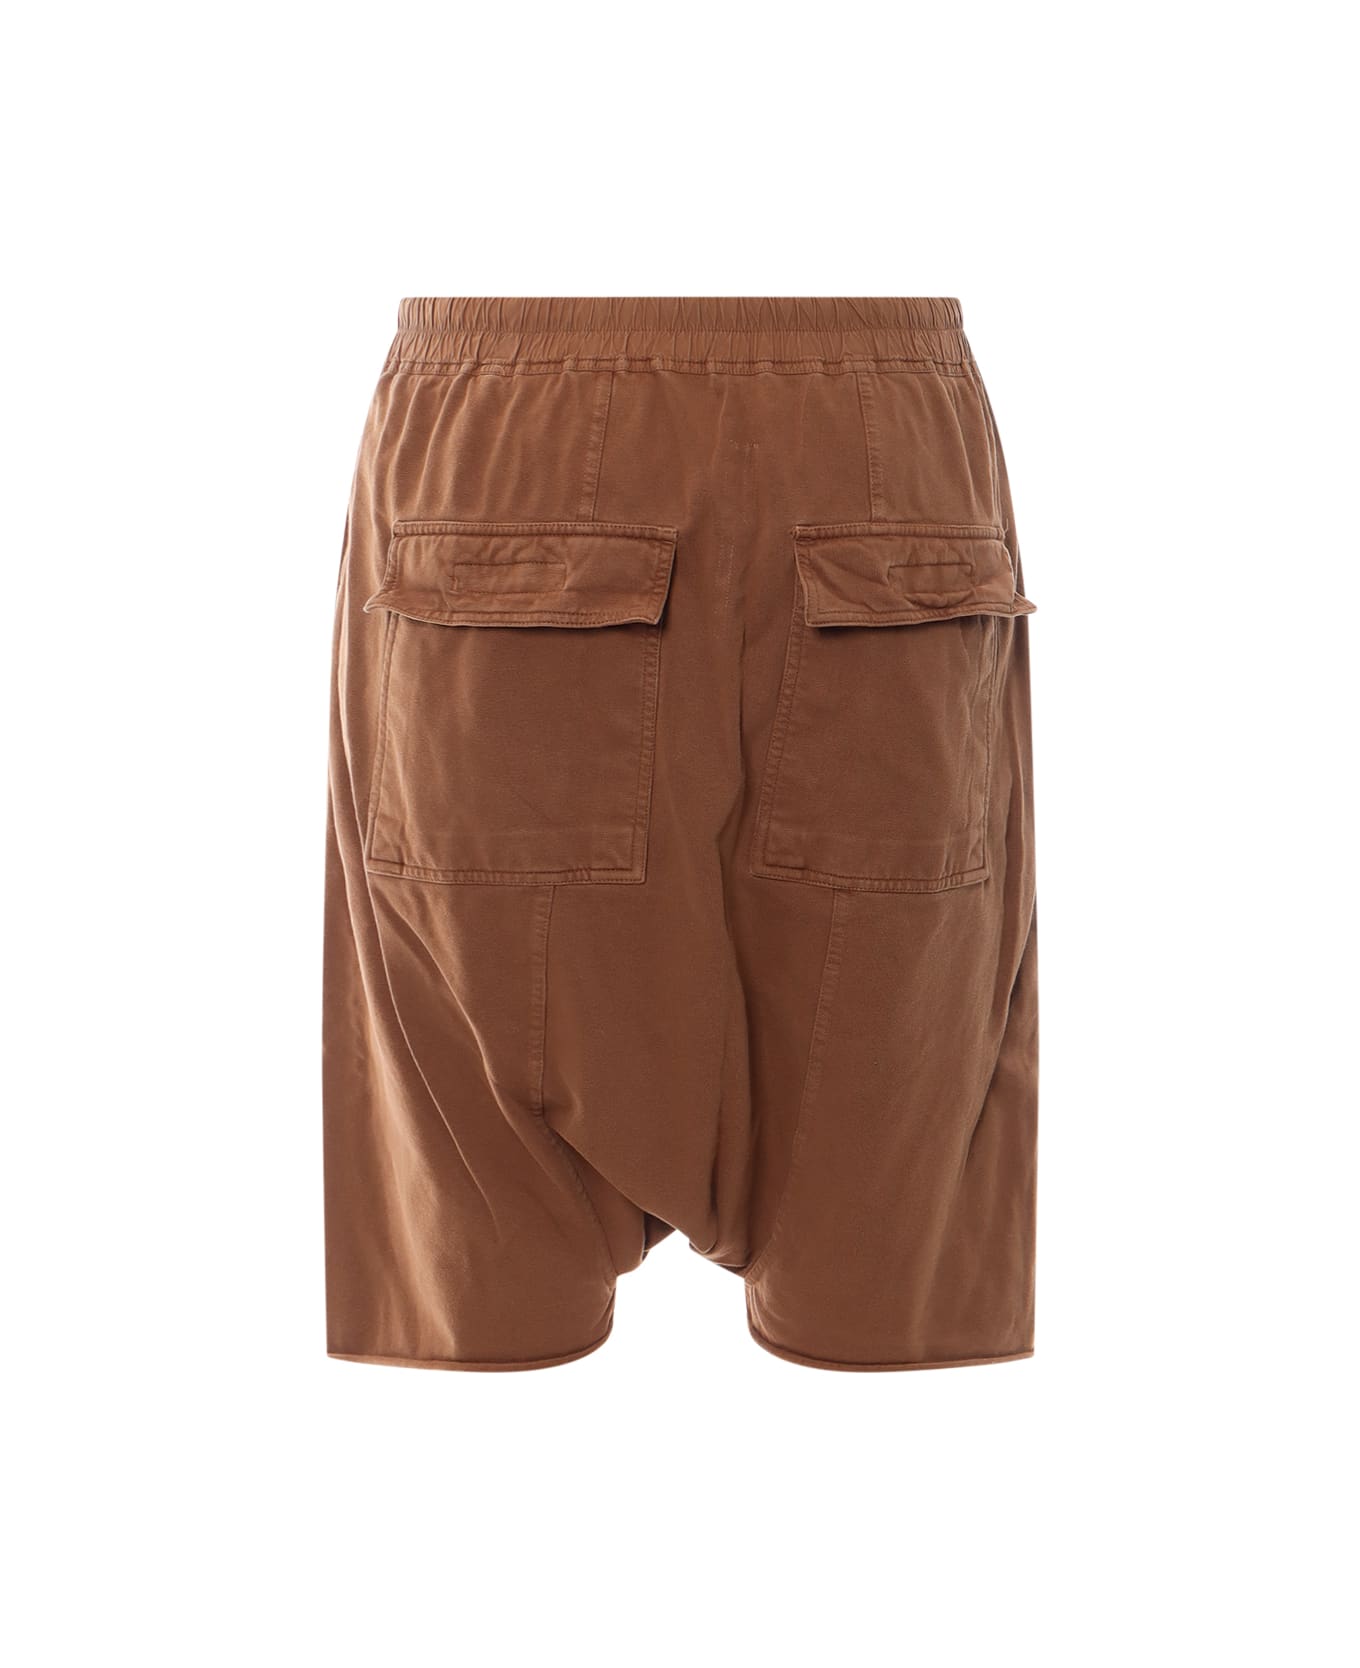 DRKSHDW Bermuda Shorts - Brown